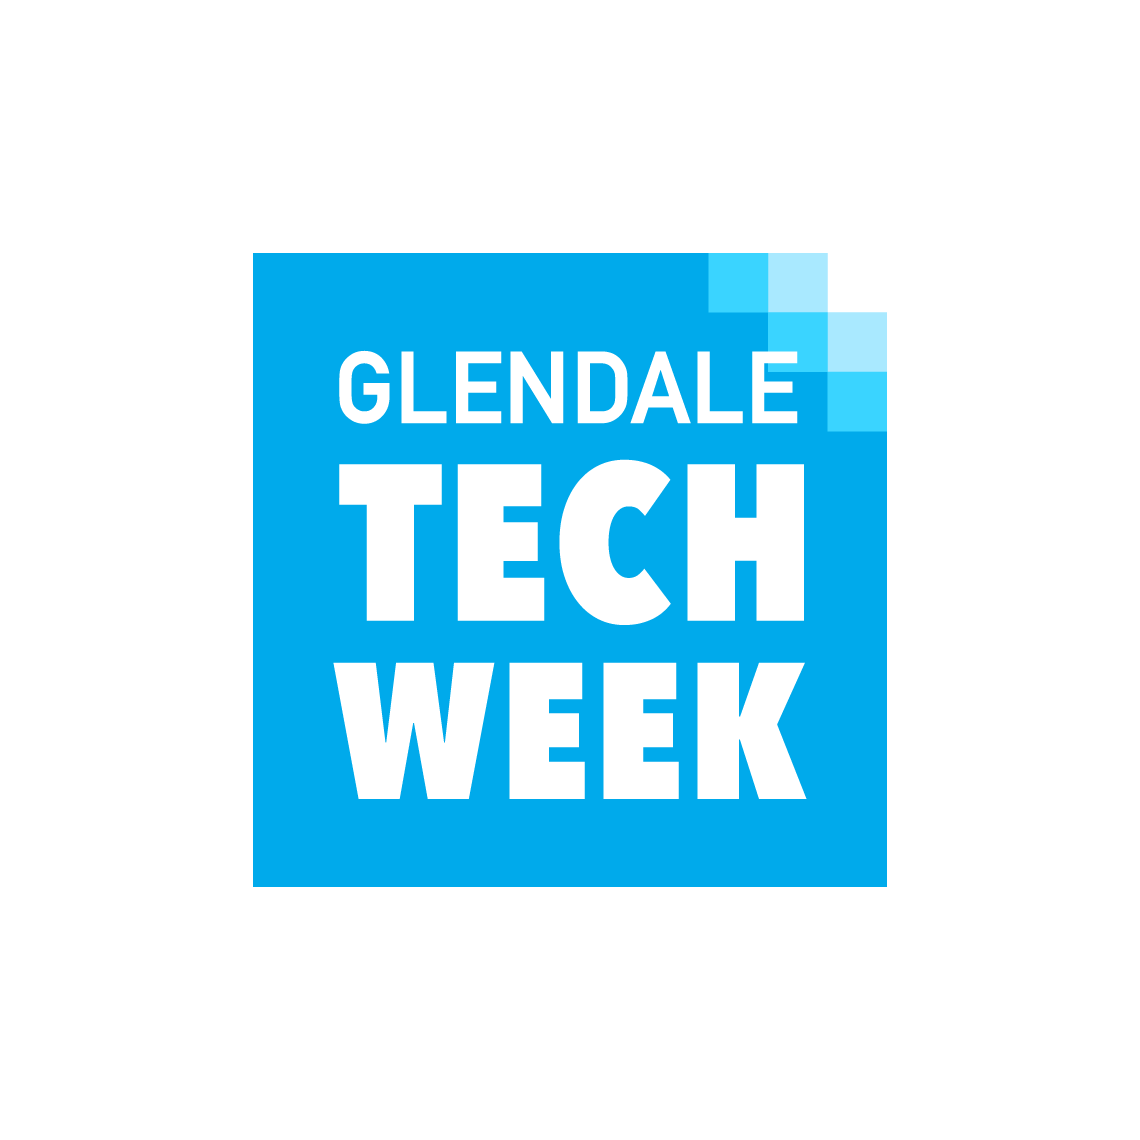 Glendale Tech Week logo designed by Kilter